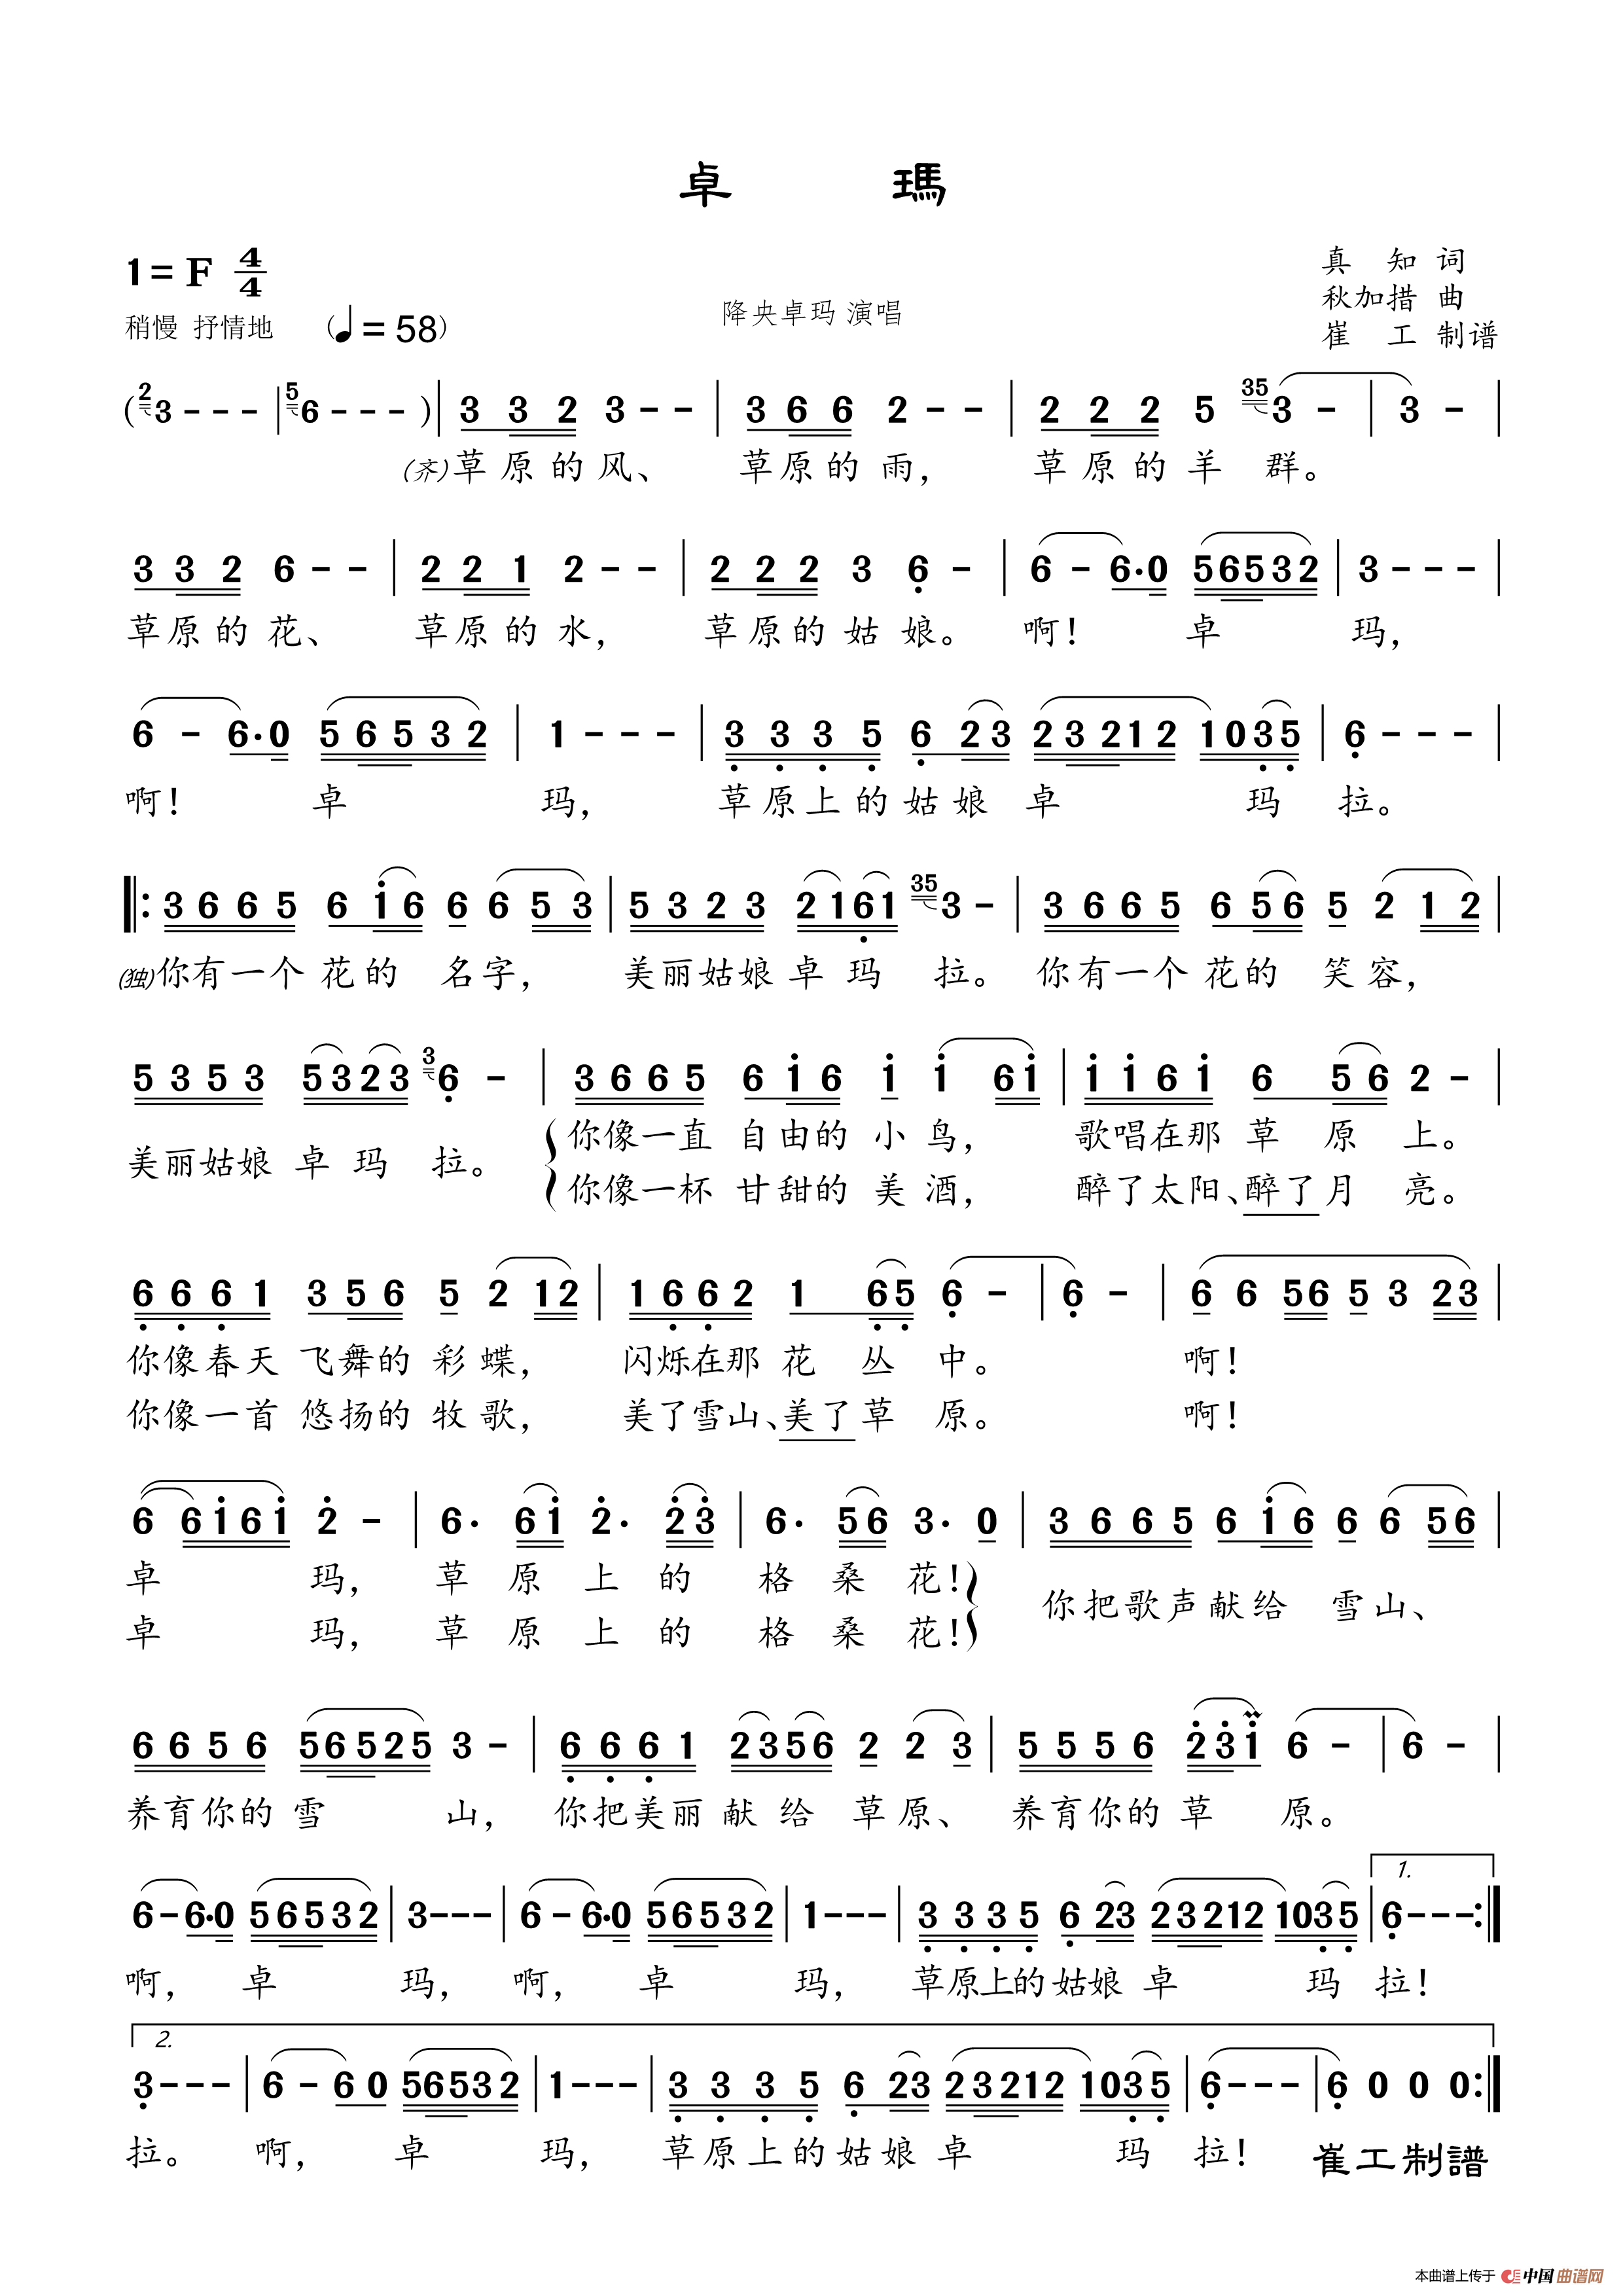 降央卓玛13首经典歌曲图片